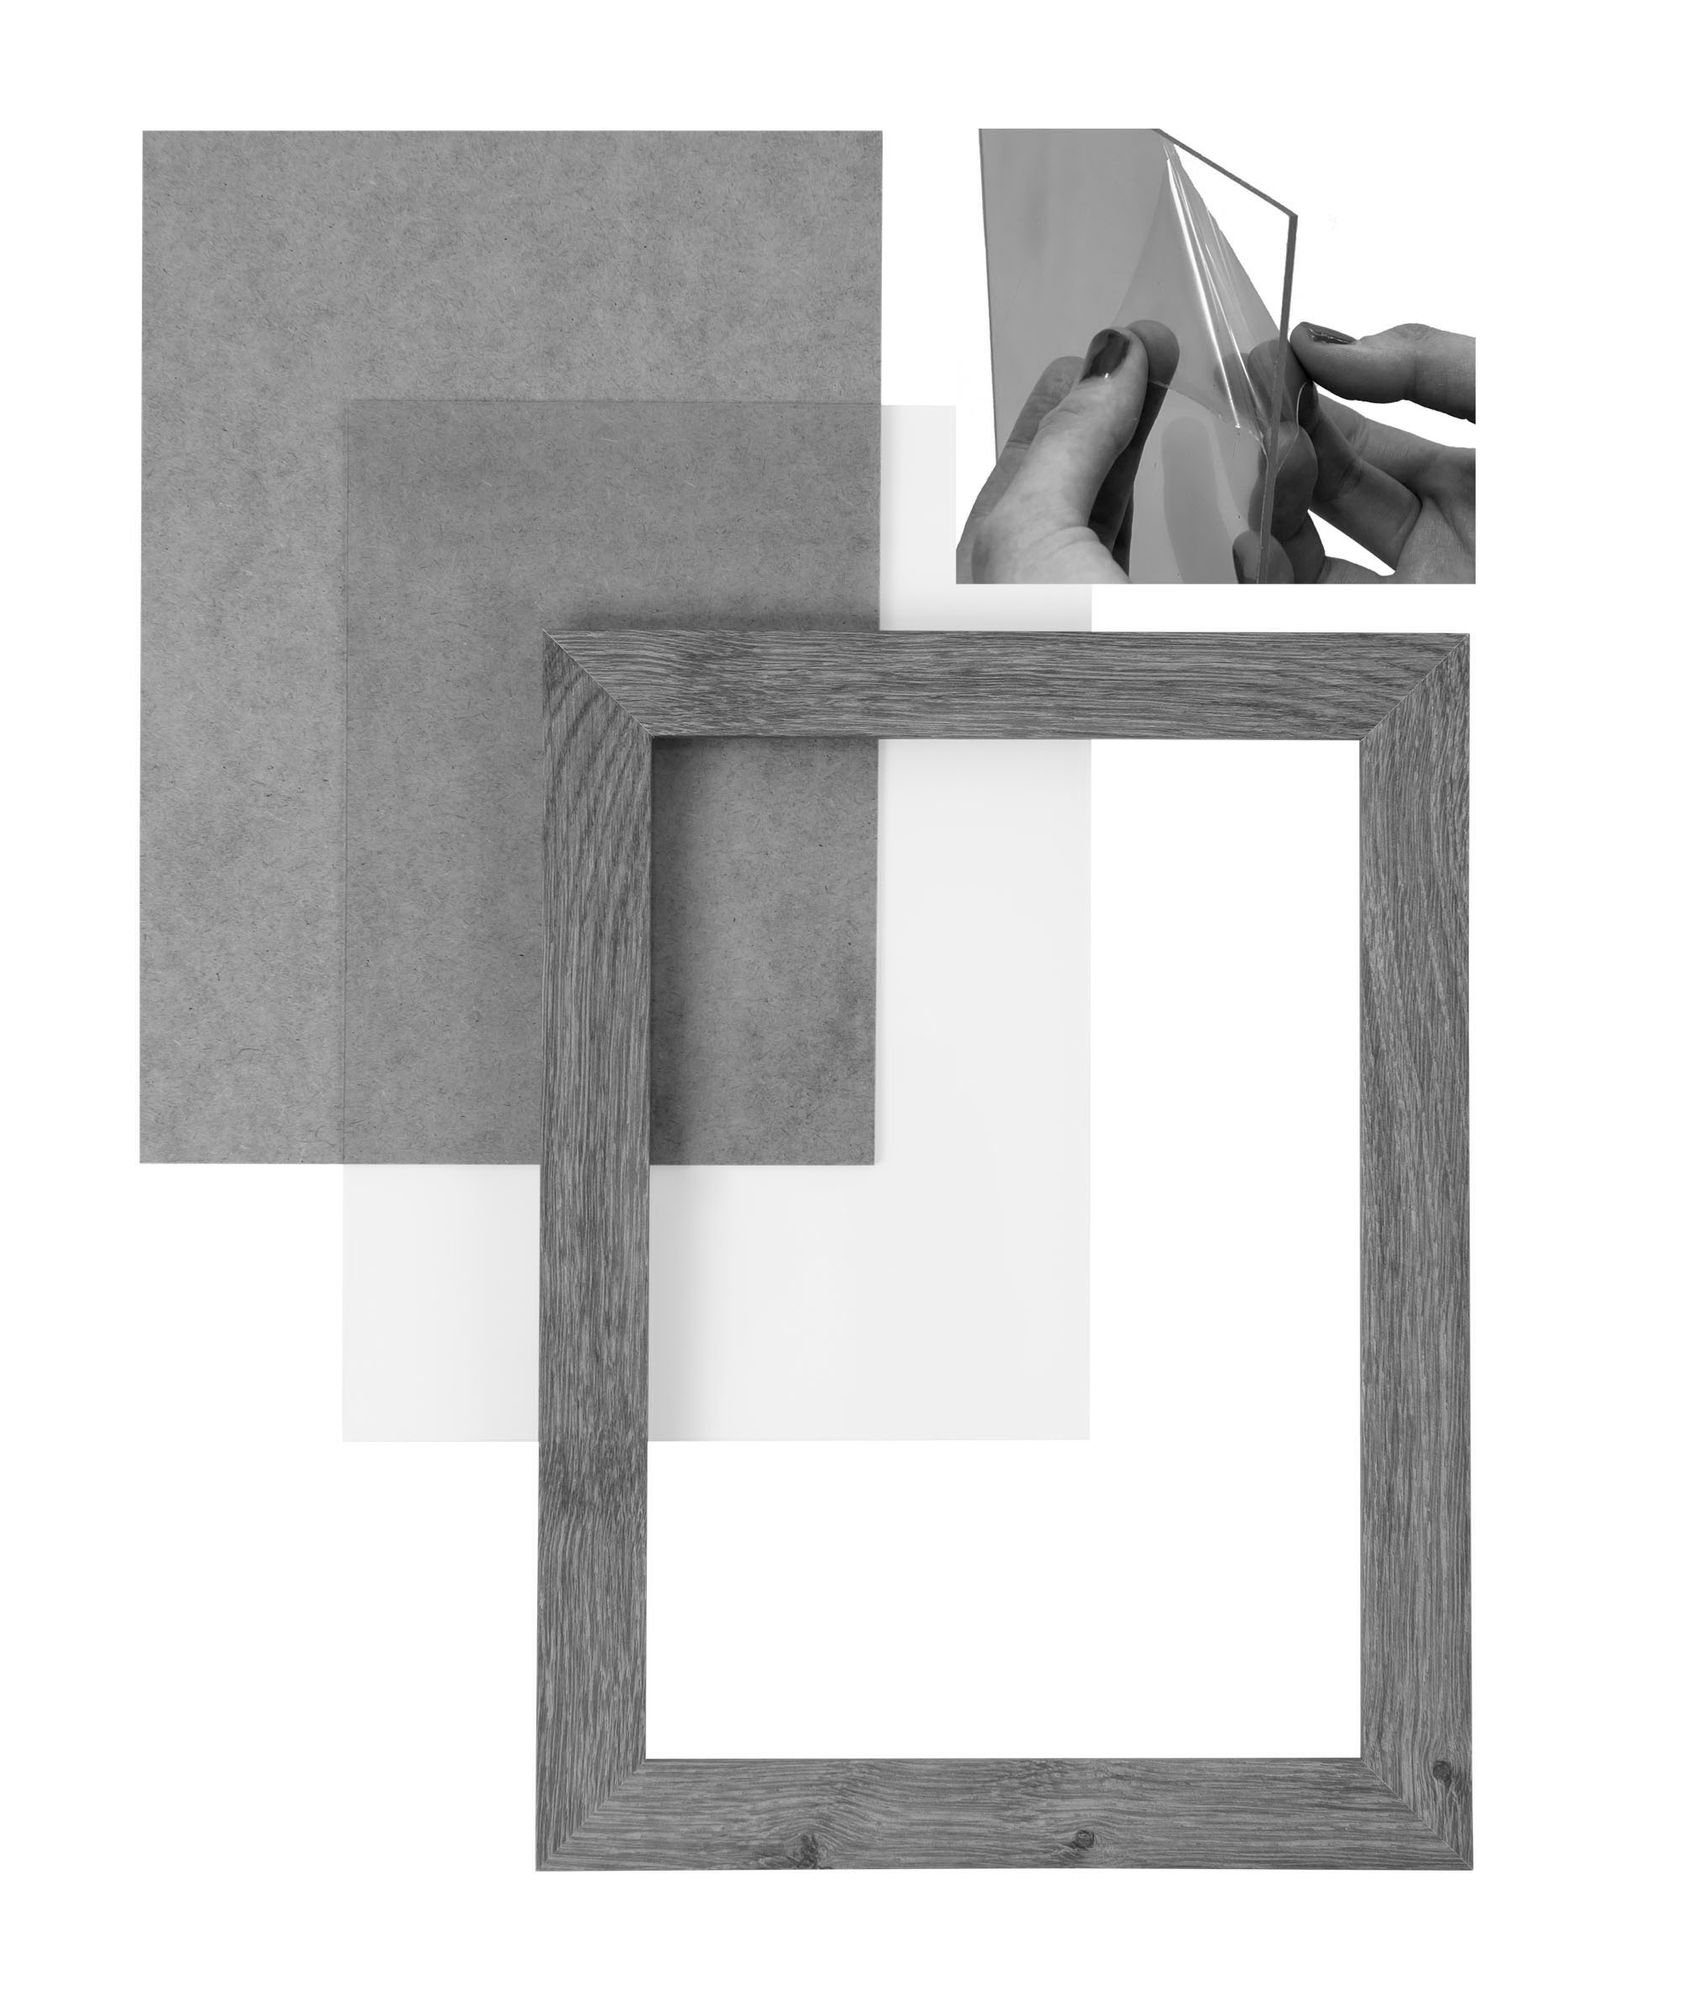 nach Bilderrahmen inkl. FSC® MDF 47,6x65,2 sonama Moderner Bilderrahmen Clamaro Rückwand 'Collage' und Aufhänger Acrylglas, eckiger Maß in CLAMARO handgefertigt Rahmen eiche Holz